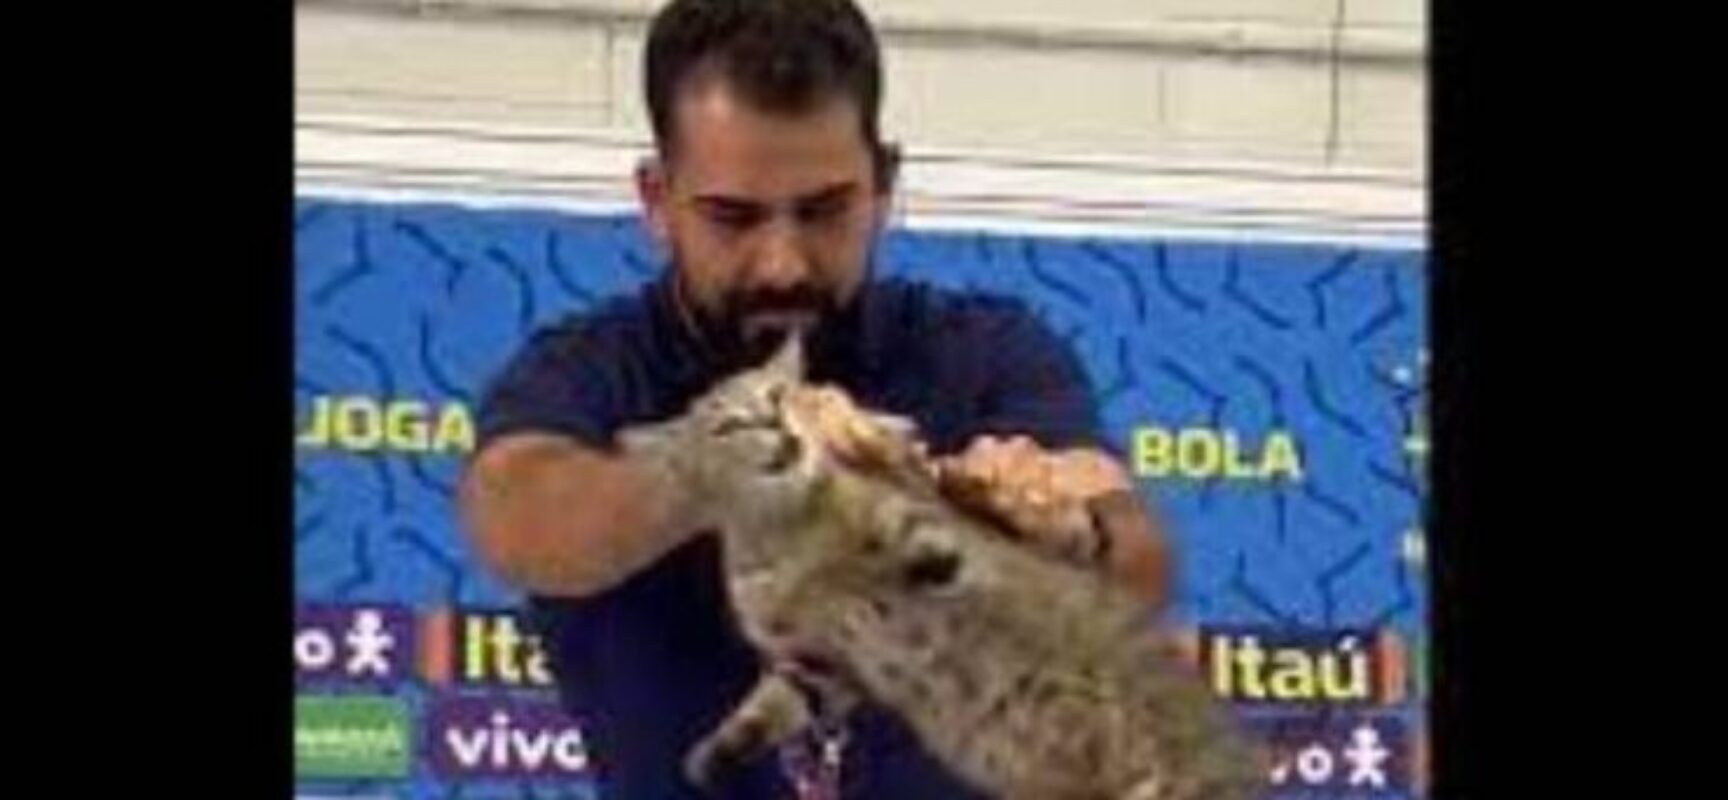 ONG de defesa de animais pede que CBF pague multa de R$ 1 milhão após assessor arremessar gato durante coletiva